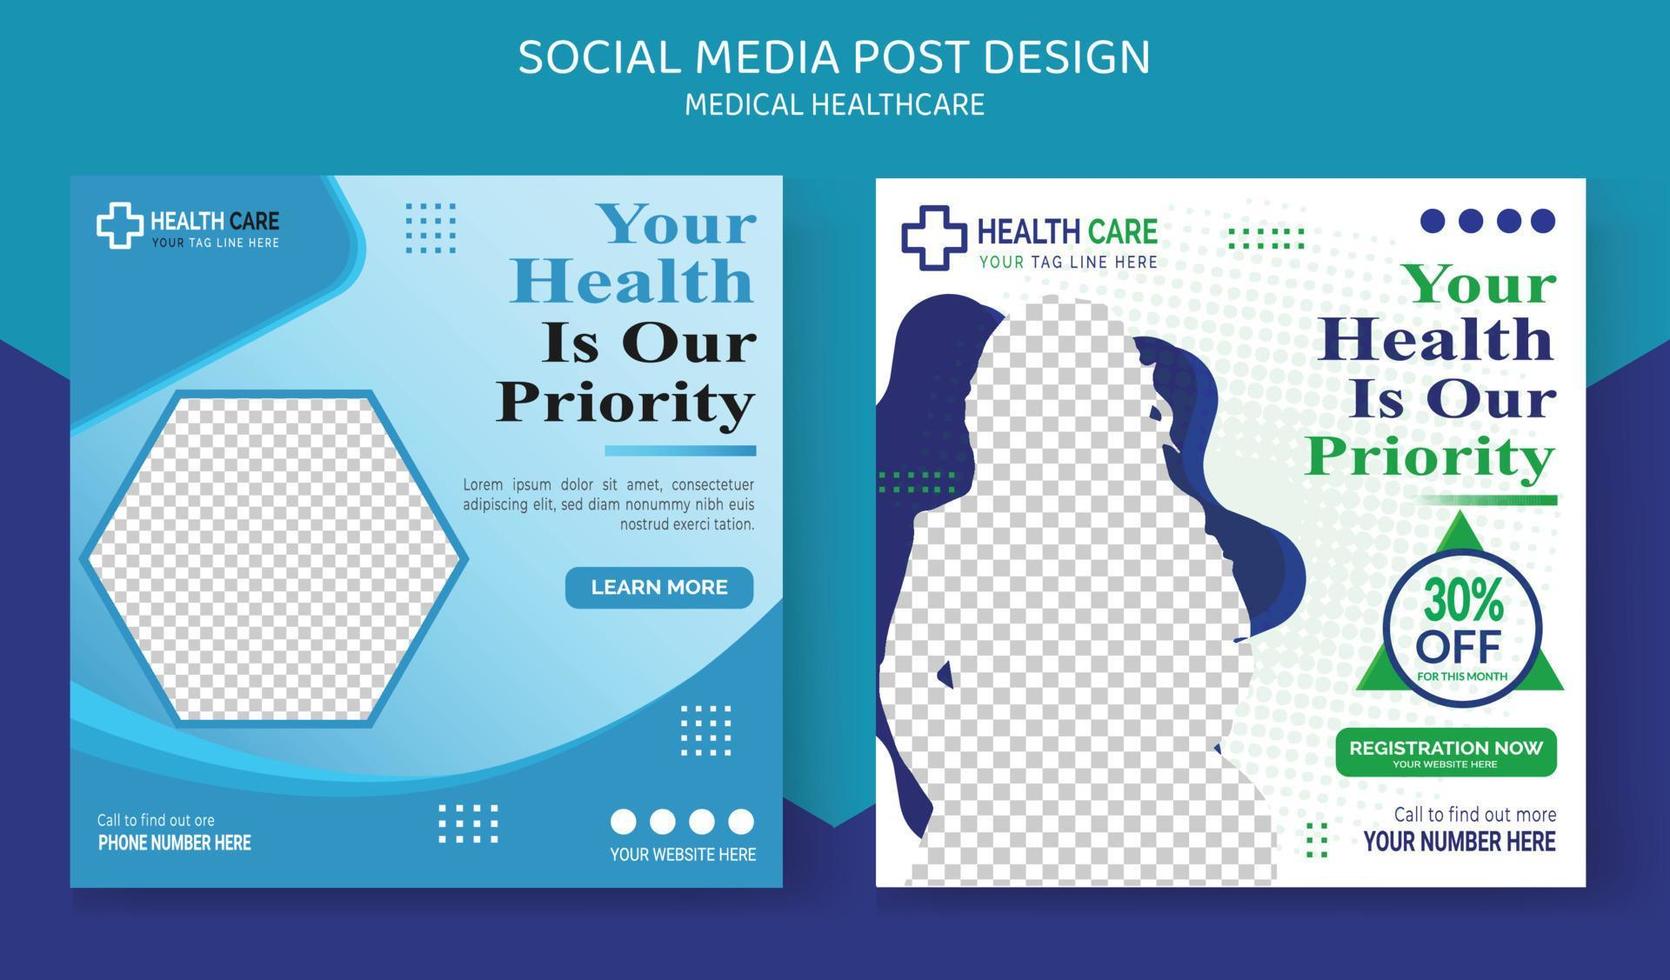 sjukhussjukvårdsläkare inlägg i sociala medier vektor